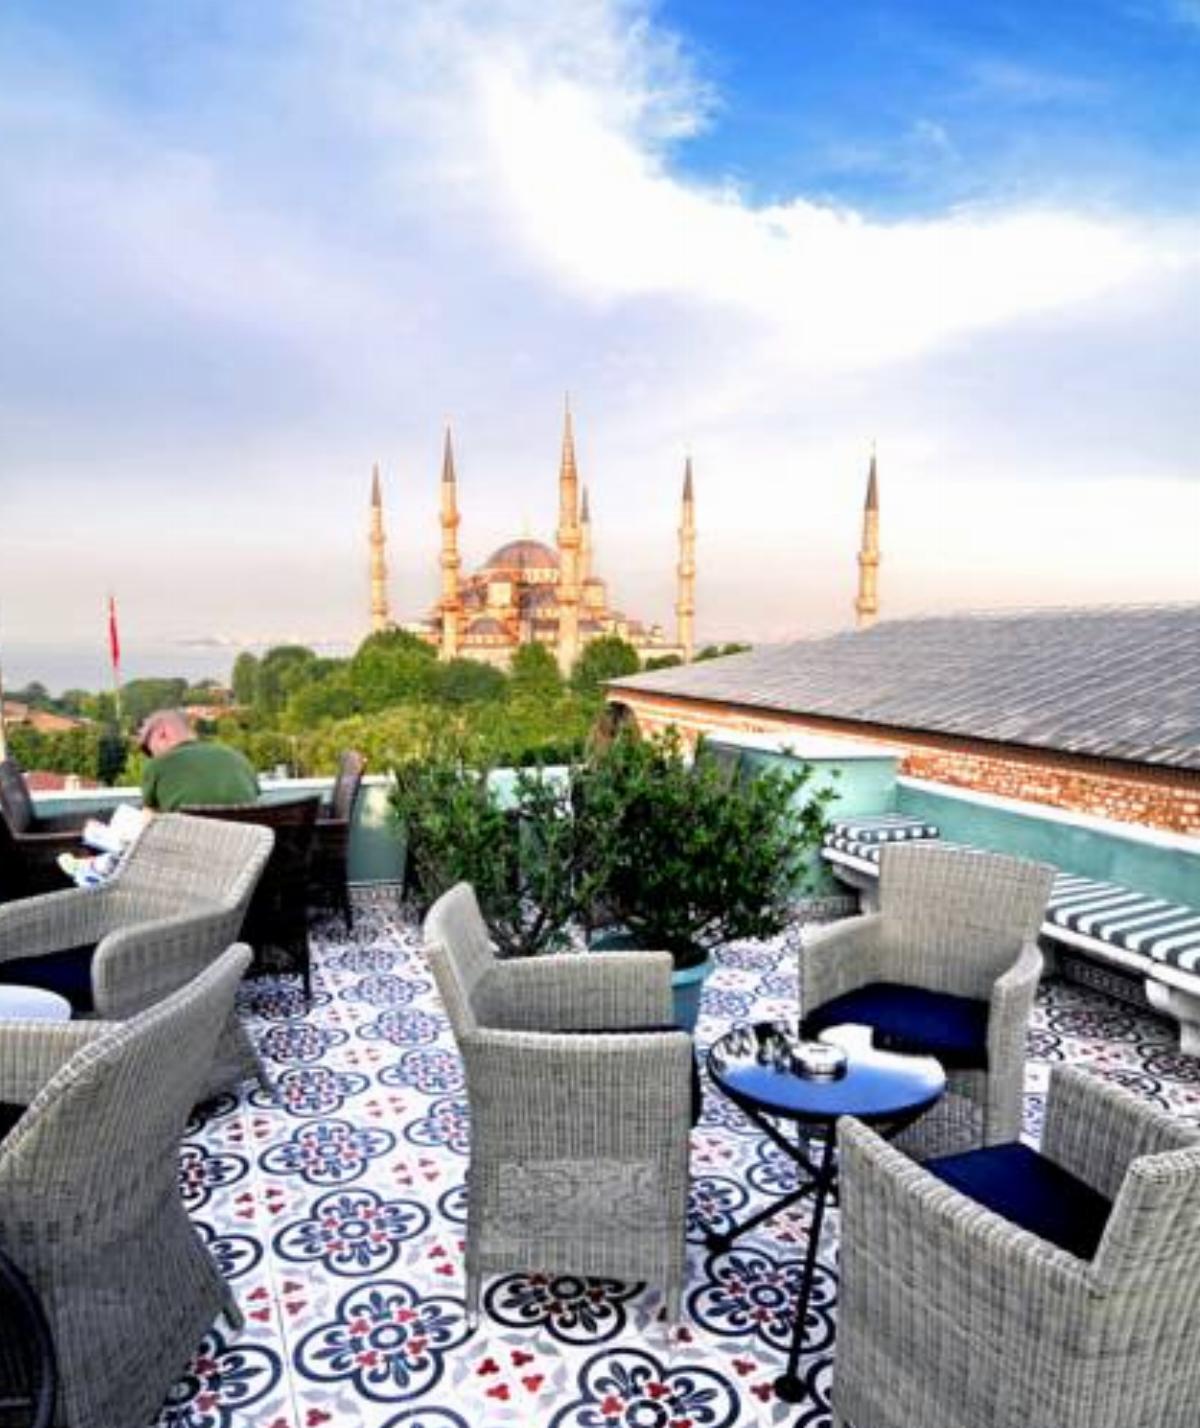 Hotel Ibrahim Pasha Hotel İstanbul Turkey